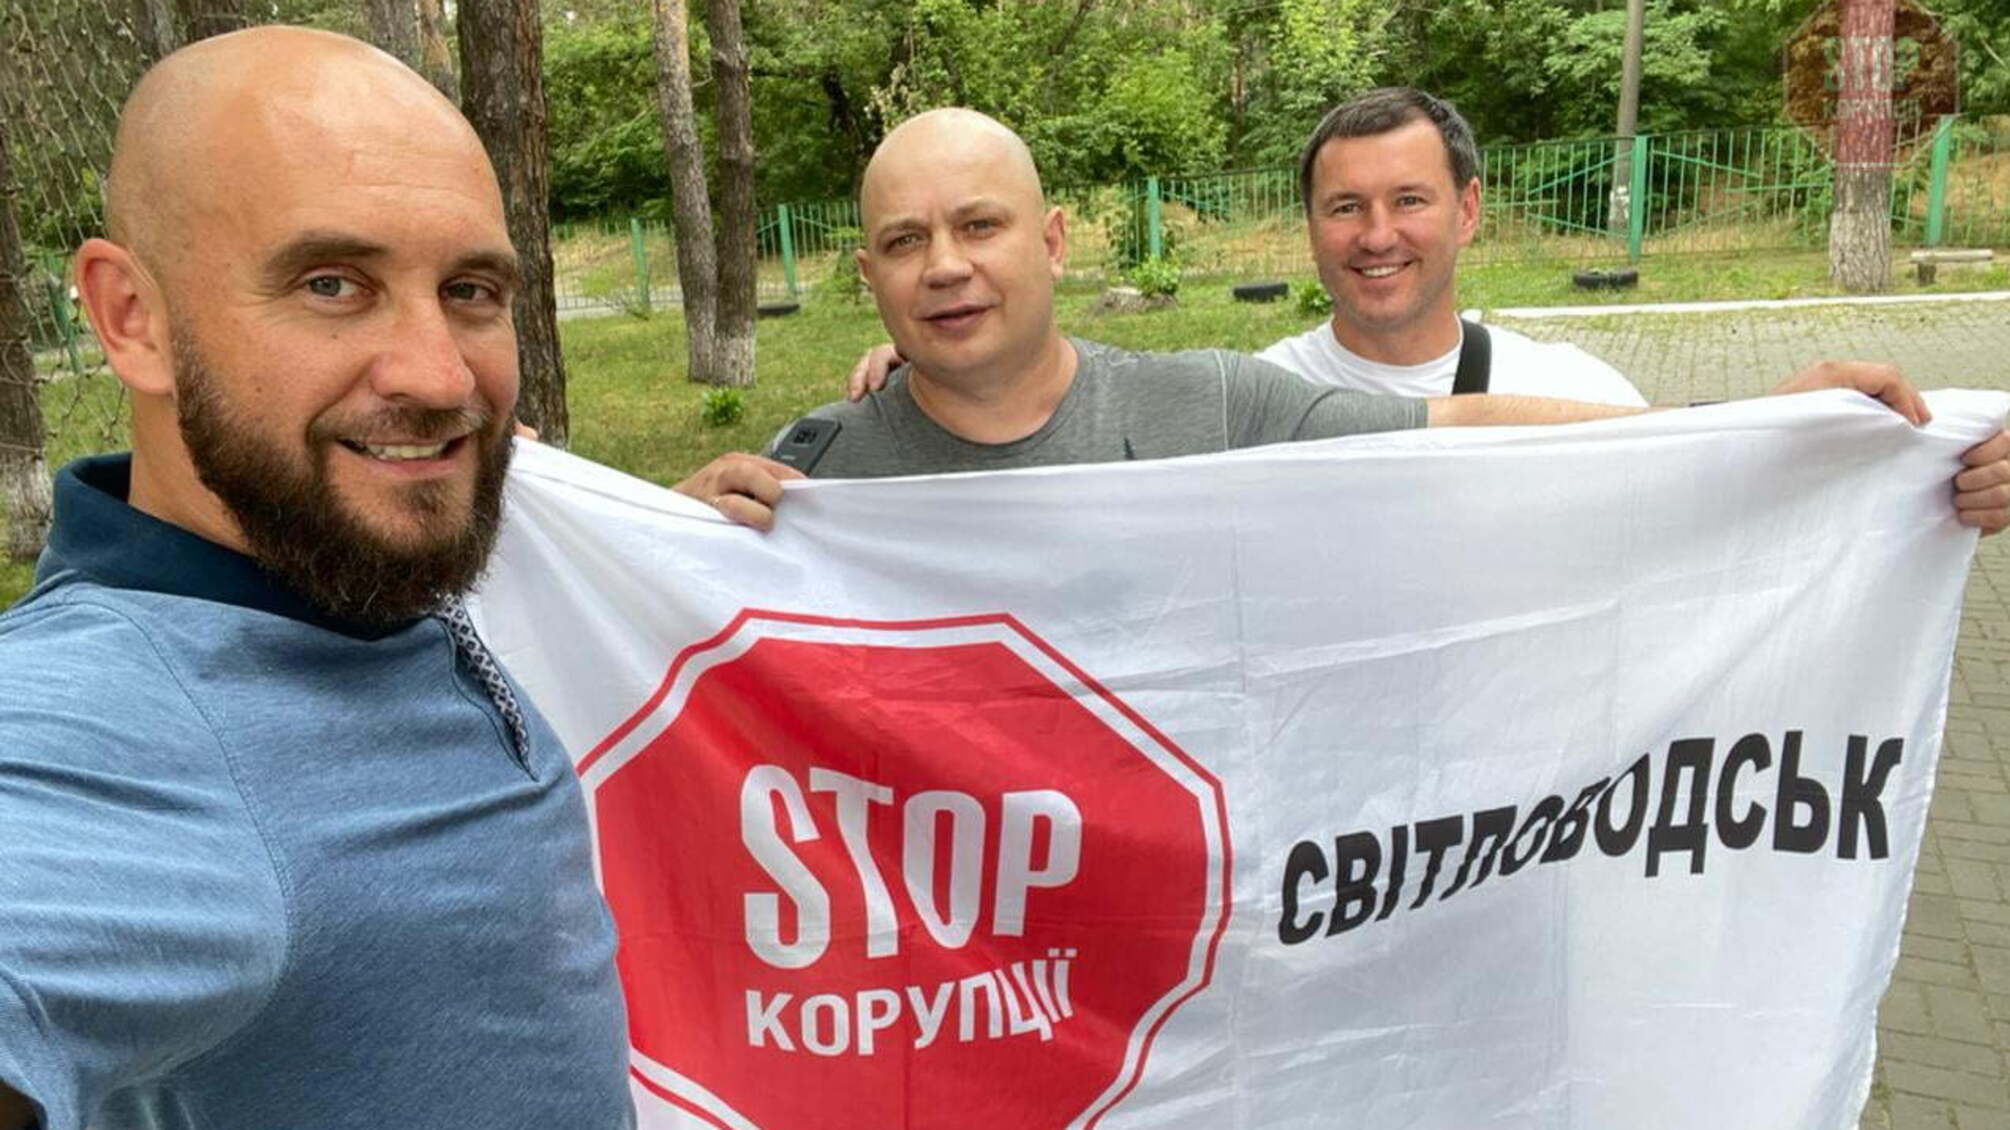 Боевая подготовка на уровне! Основатели антикоррупционной организации посетили Светловодск (фото)